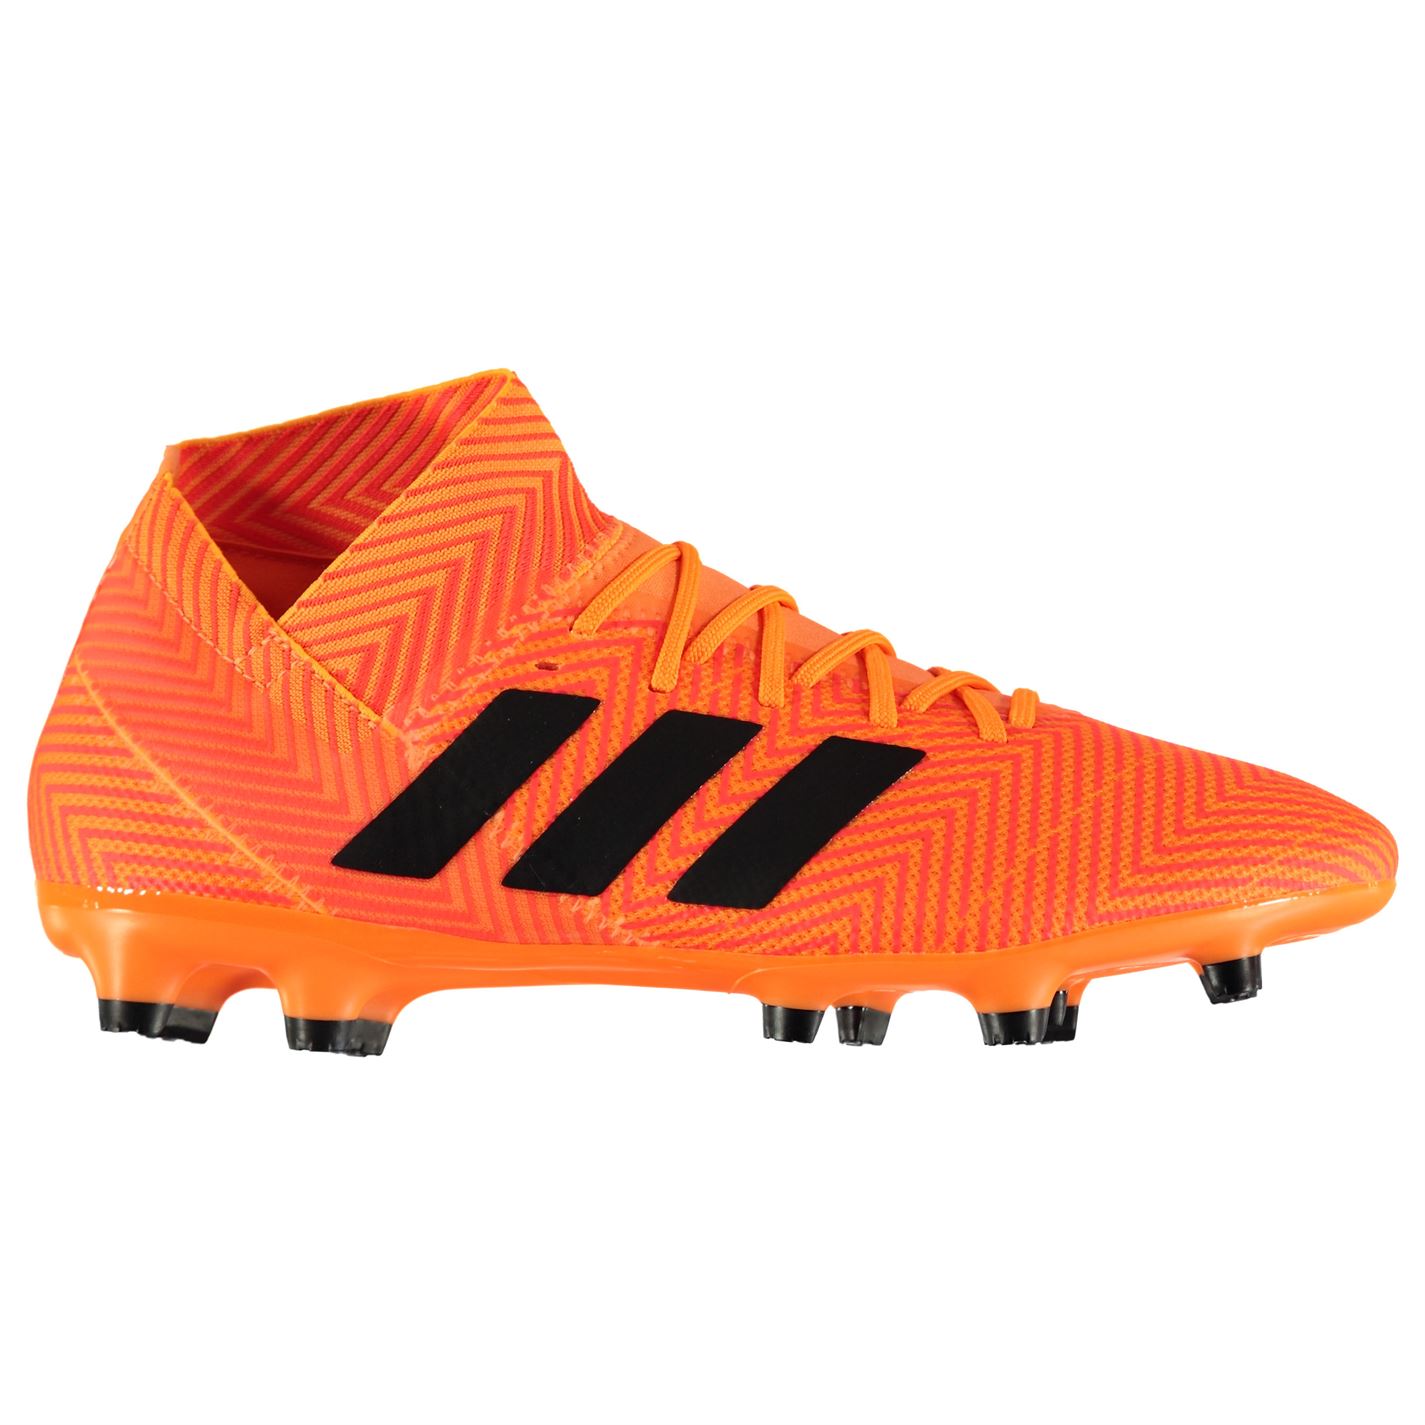 Adidas NEMEZIZ 18.3 FG Men’s Football Boots